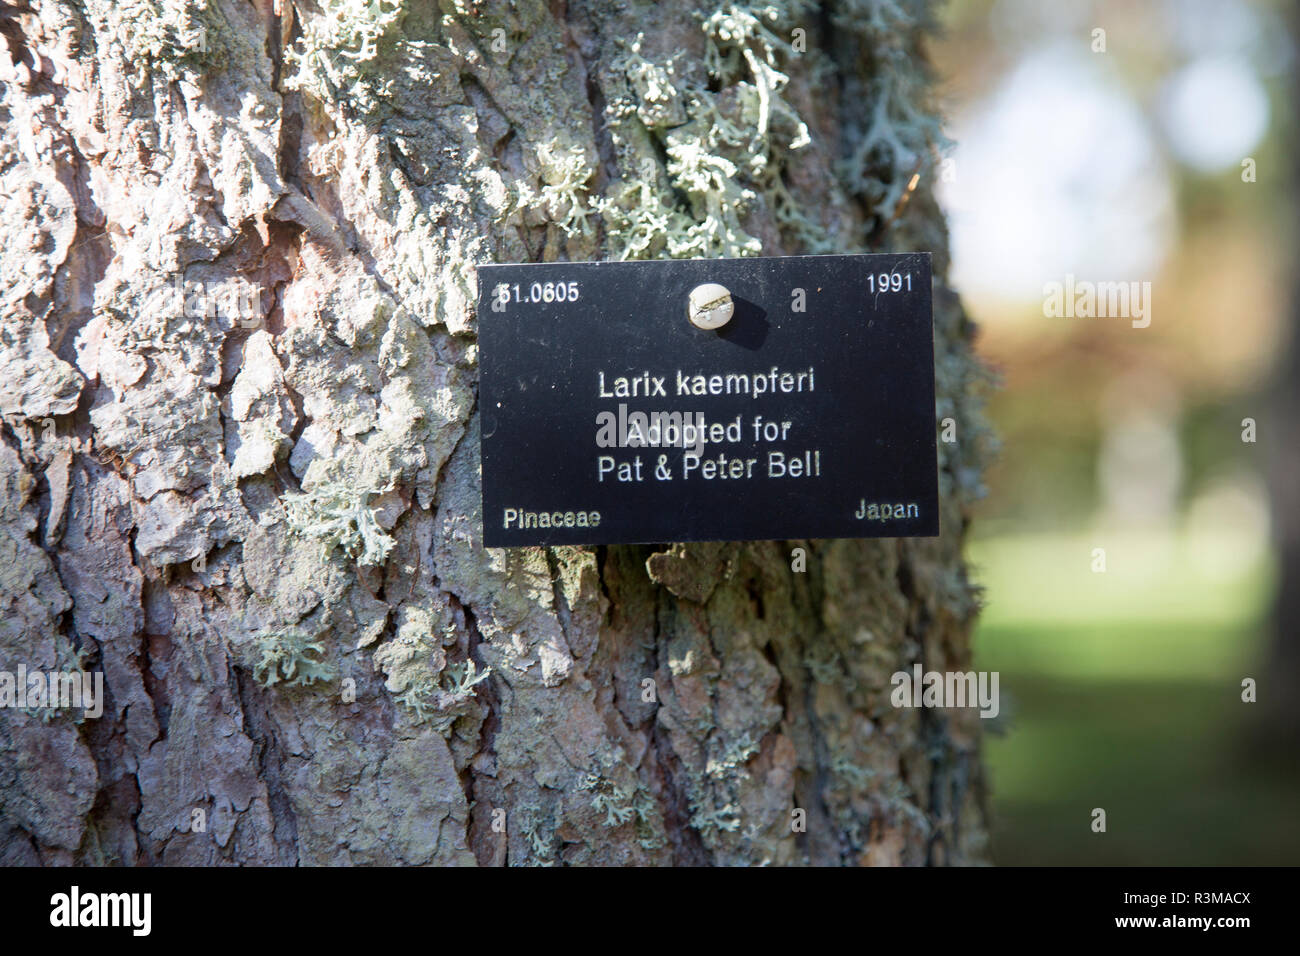 Étiquette d'identification des espèces d'arbres, National arboretum, Westonbirt Arboretum, Gloucestershire, England, UK - Larix kaempferi, Pinaceae pin Banque D'Images